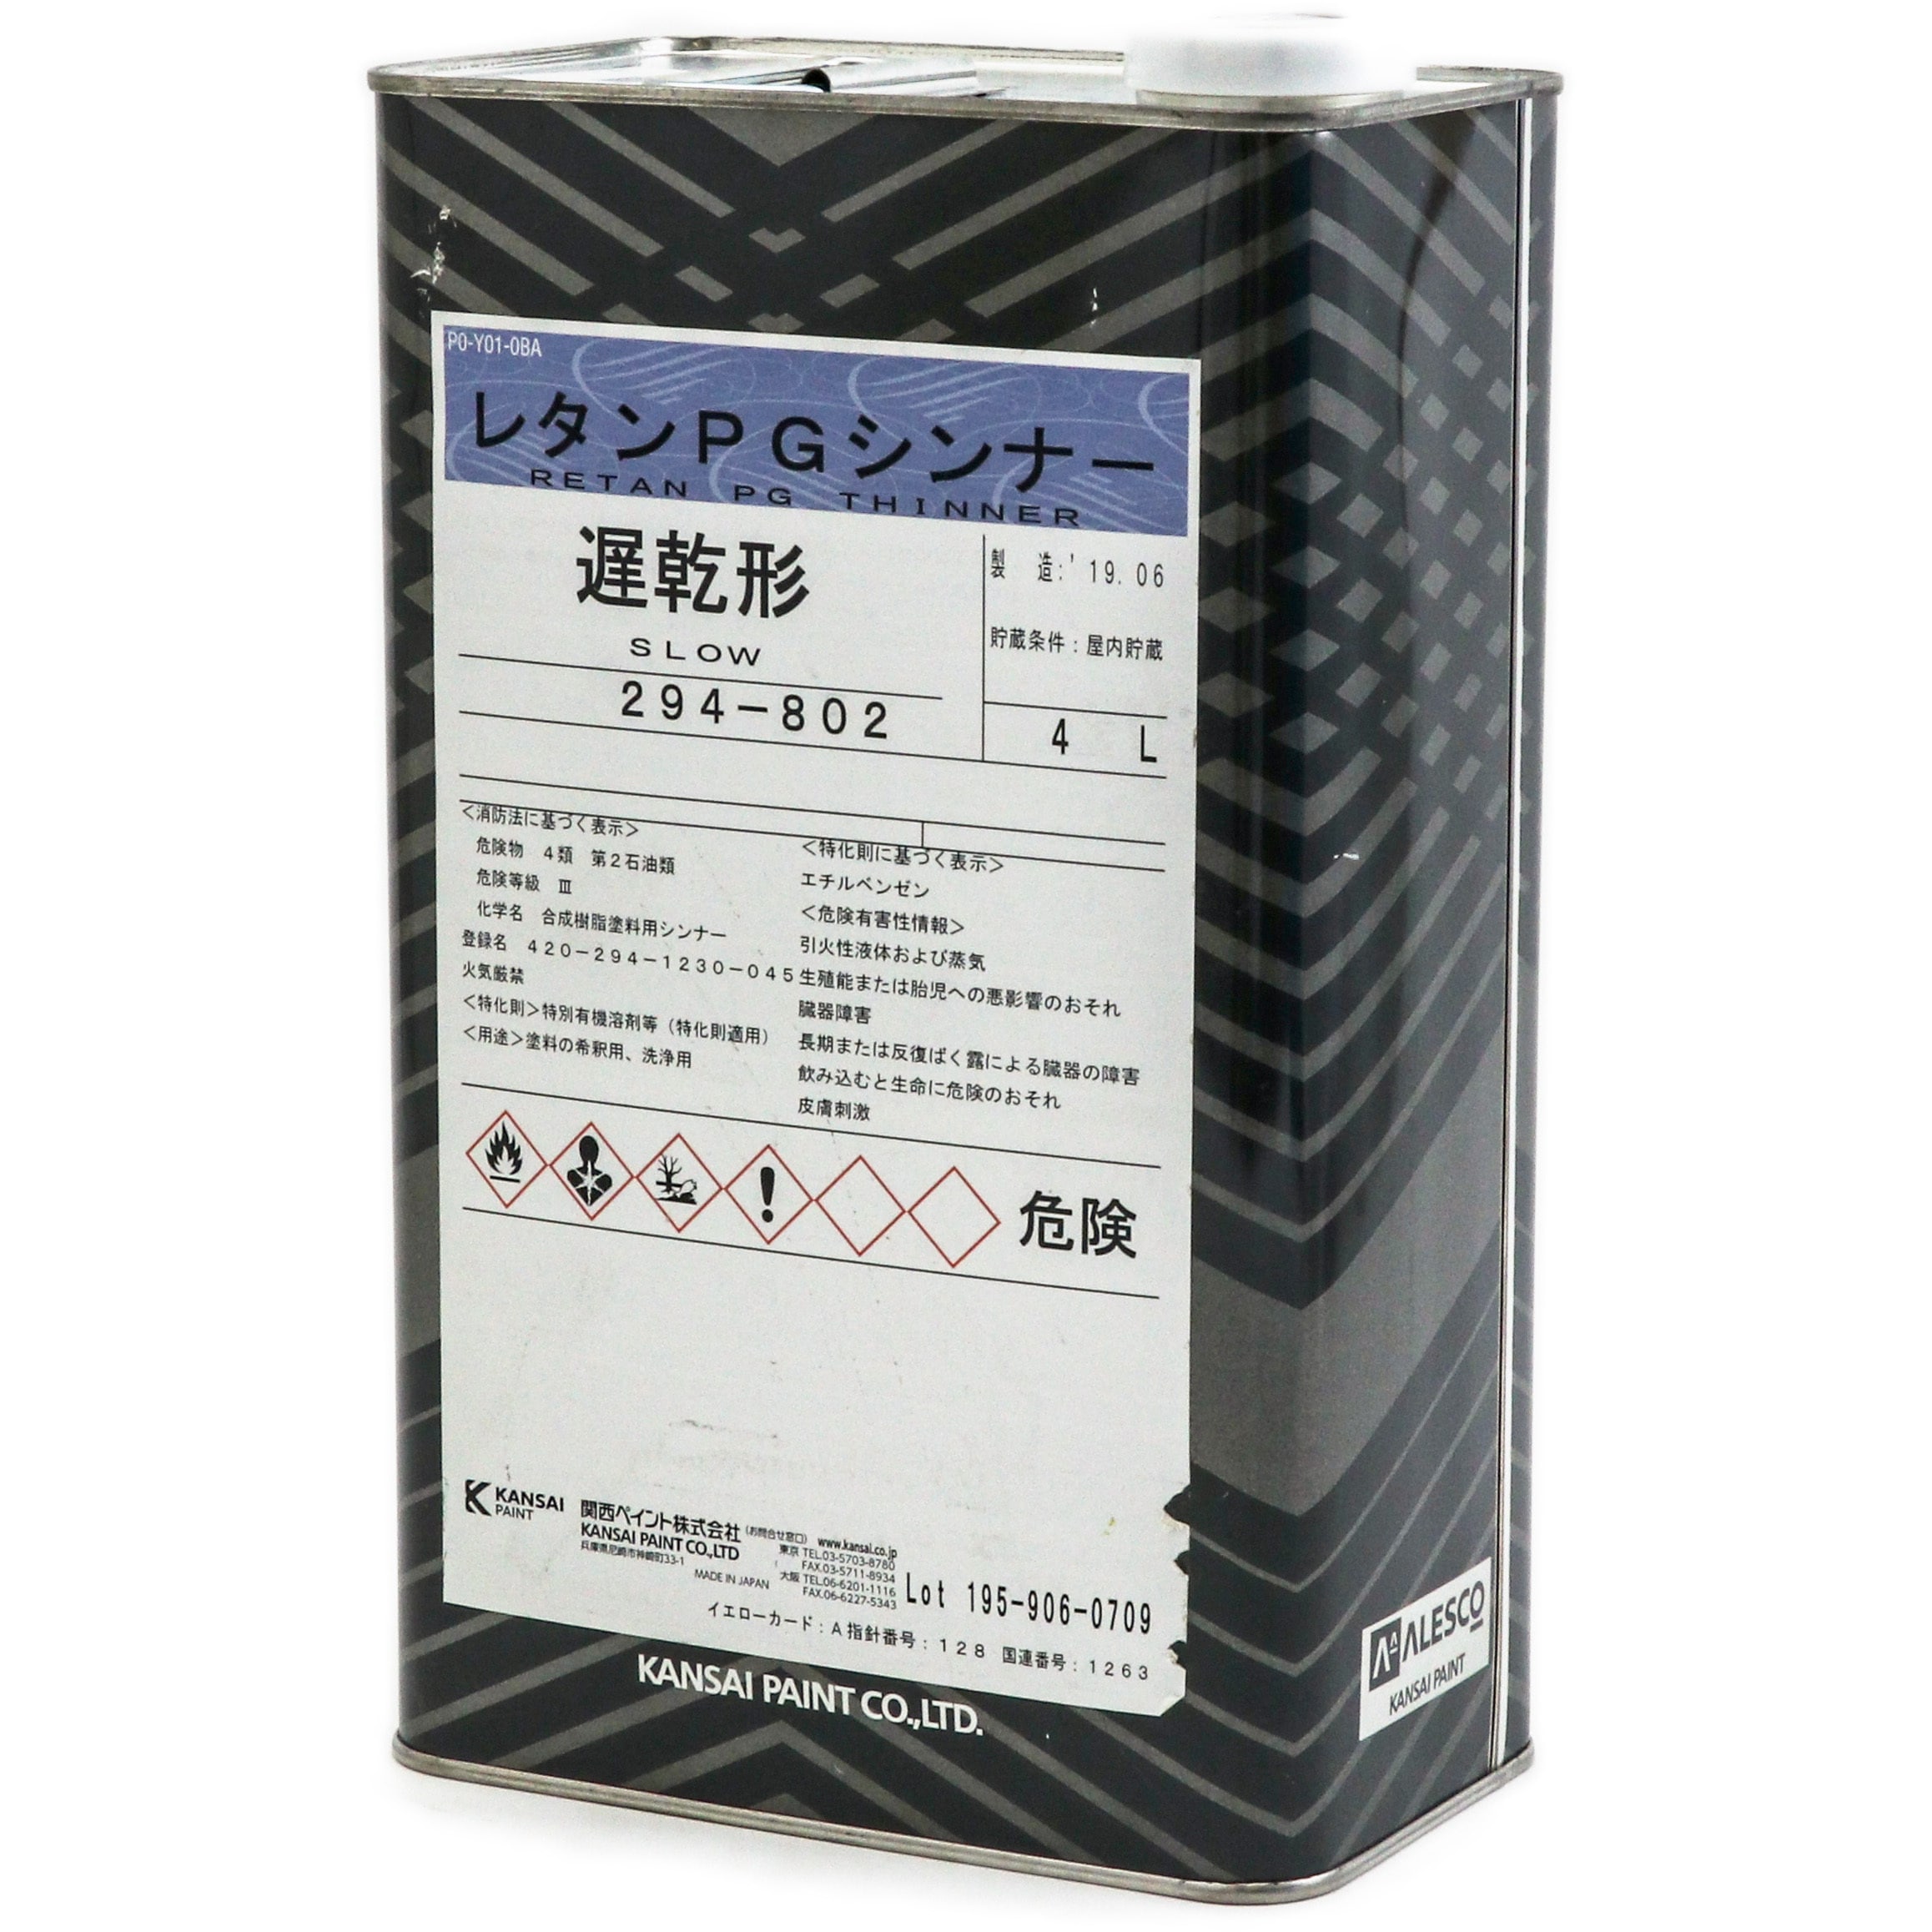 レタンPGシンナー遅乾型 1缶(4L) 関西ペイント 【通販サイトMonotaRO】